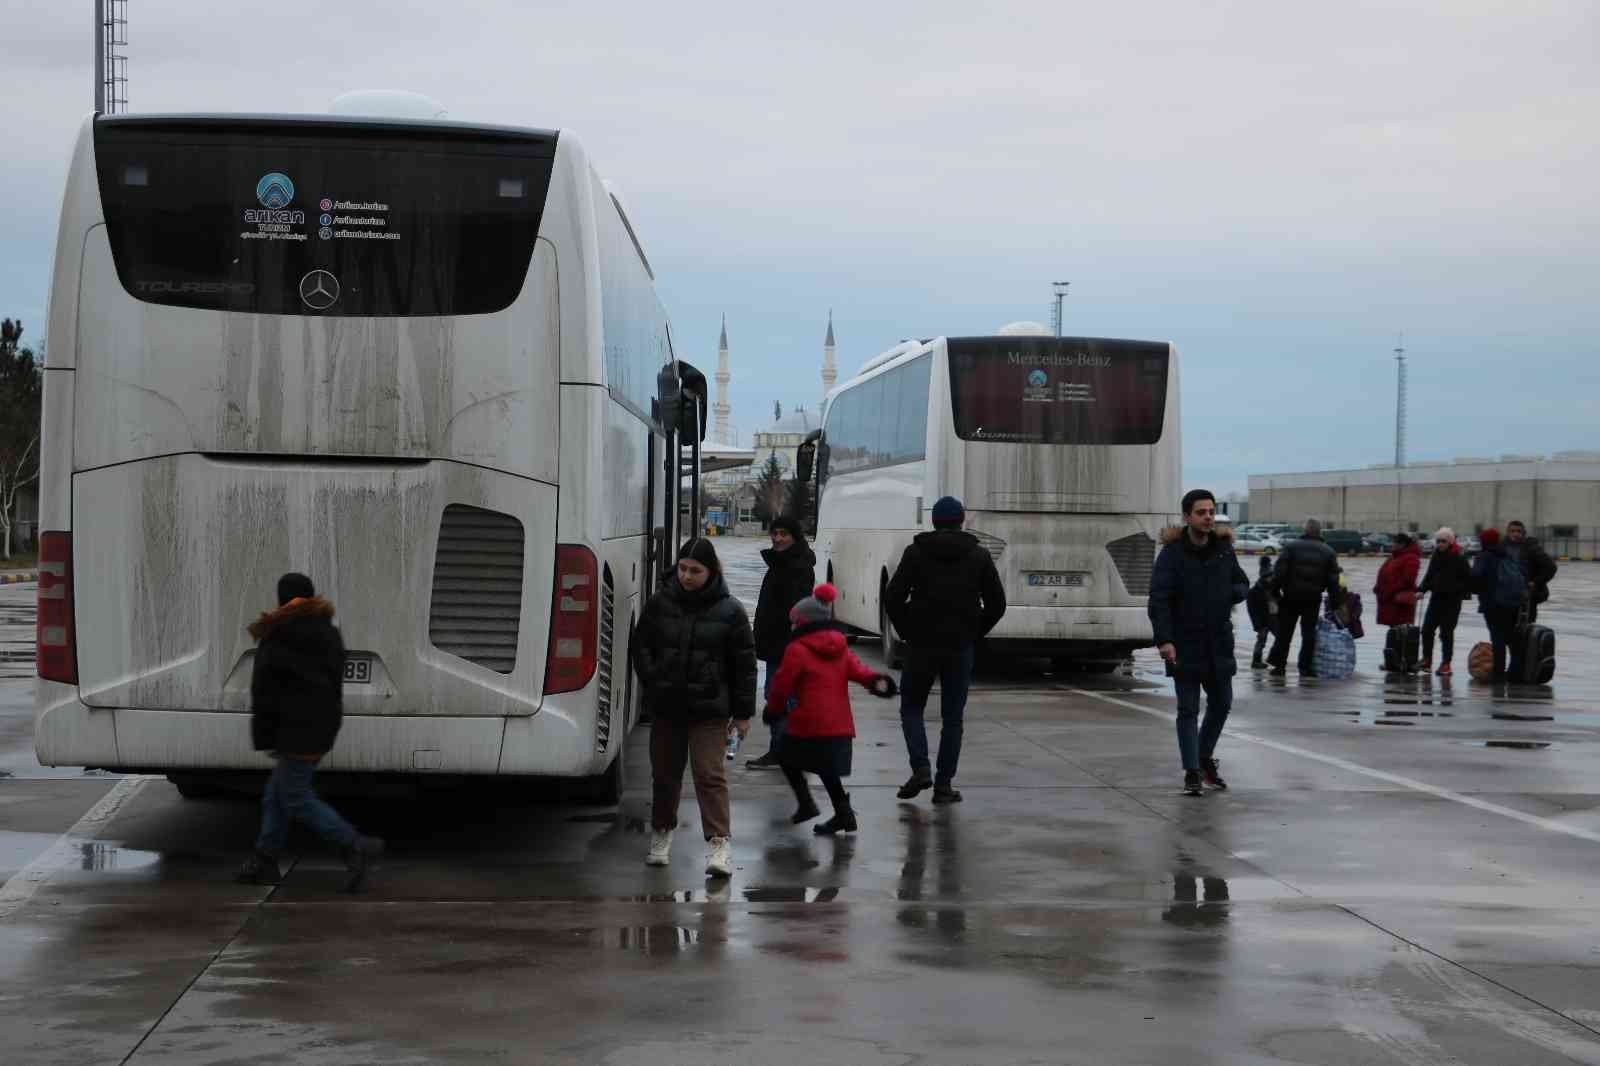 EDİRNE (İHA) – Rusya‘nın Ukrayna’ya açtığı savaş nedeniyle ülkeden göç etmek zorunda kalan Azerbaycanlı kadınlar, Edirne Kapıkule Sınır Kapısı ...